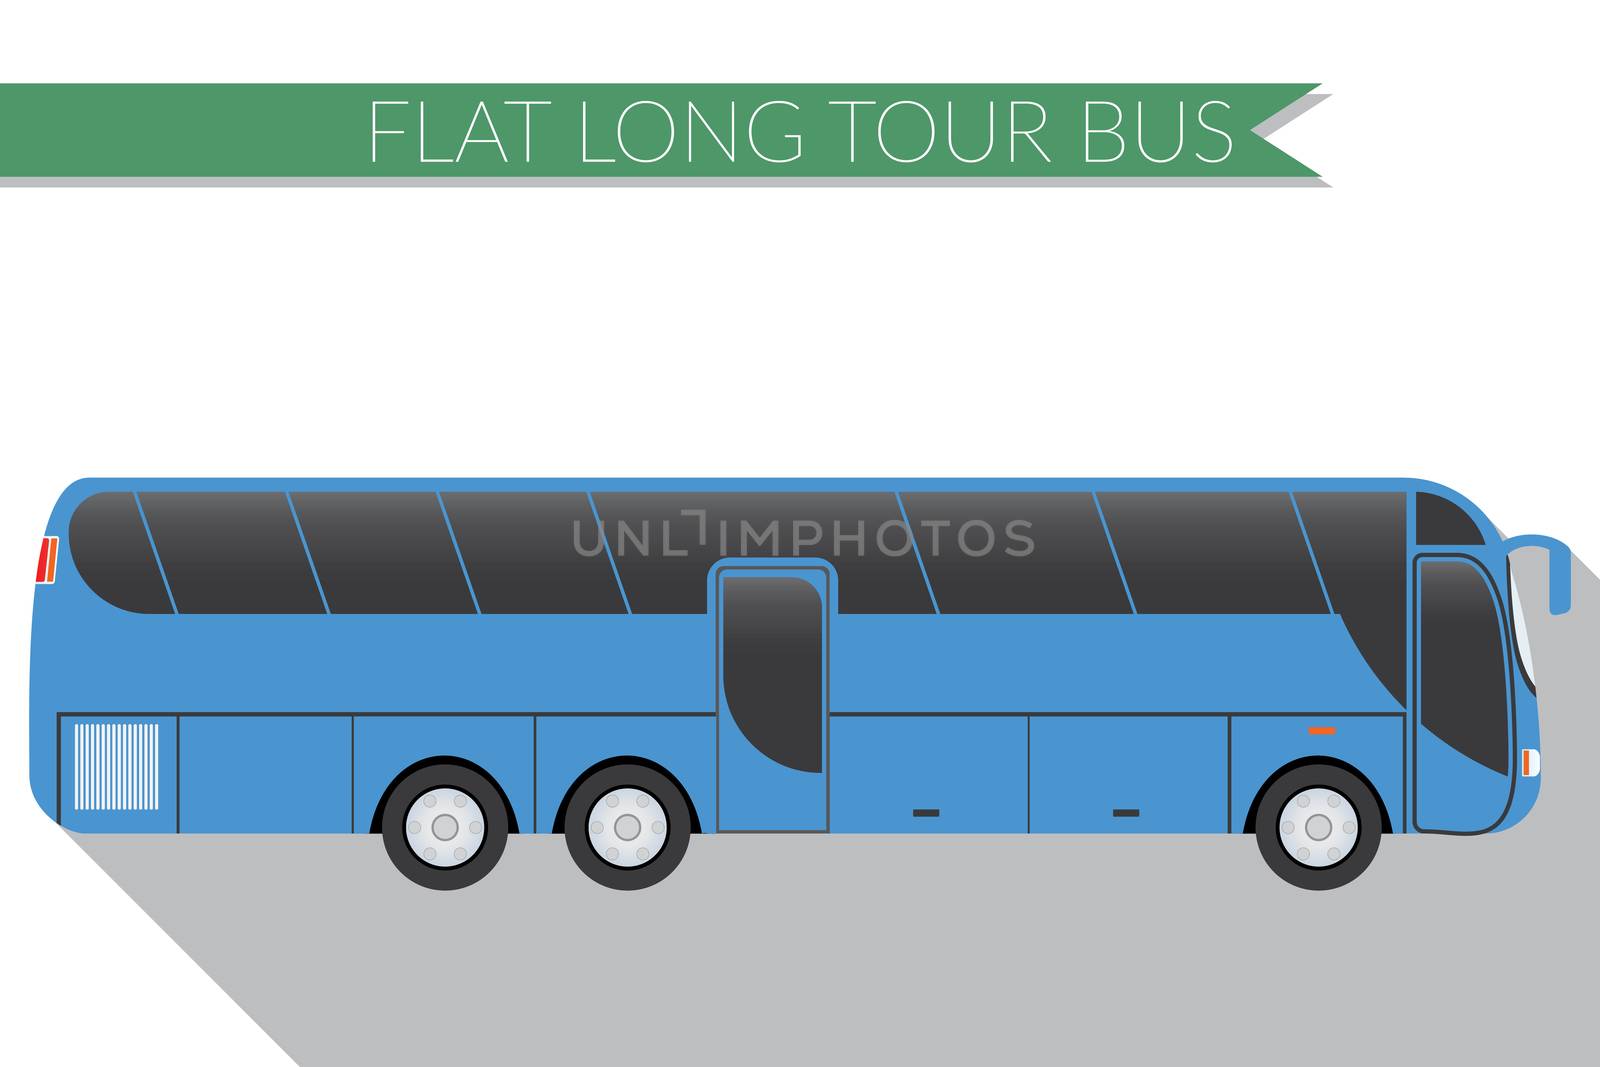 Flat design vector illustration city Transportation, Bus, intercity, long distance tourist coach bus, side view by Lemon_workshop